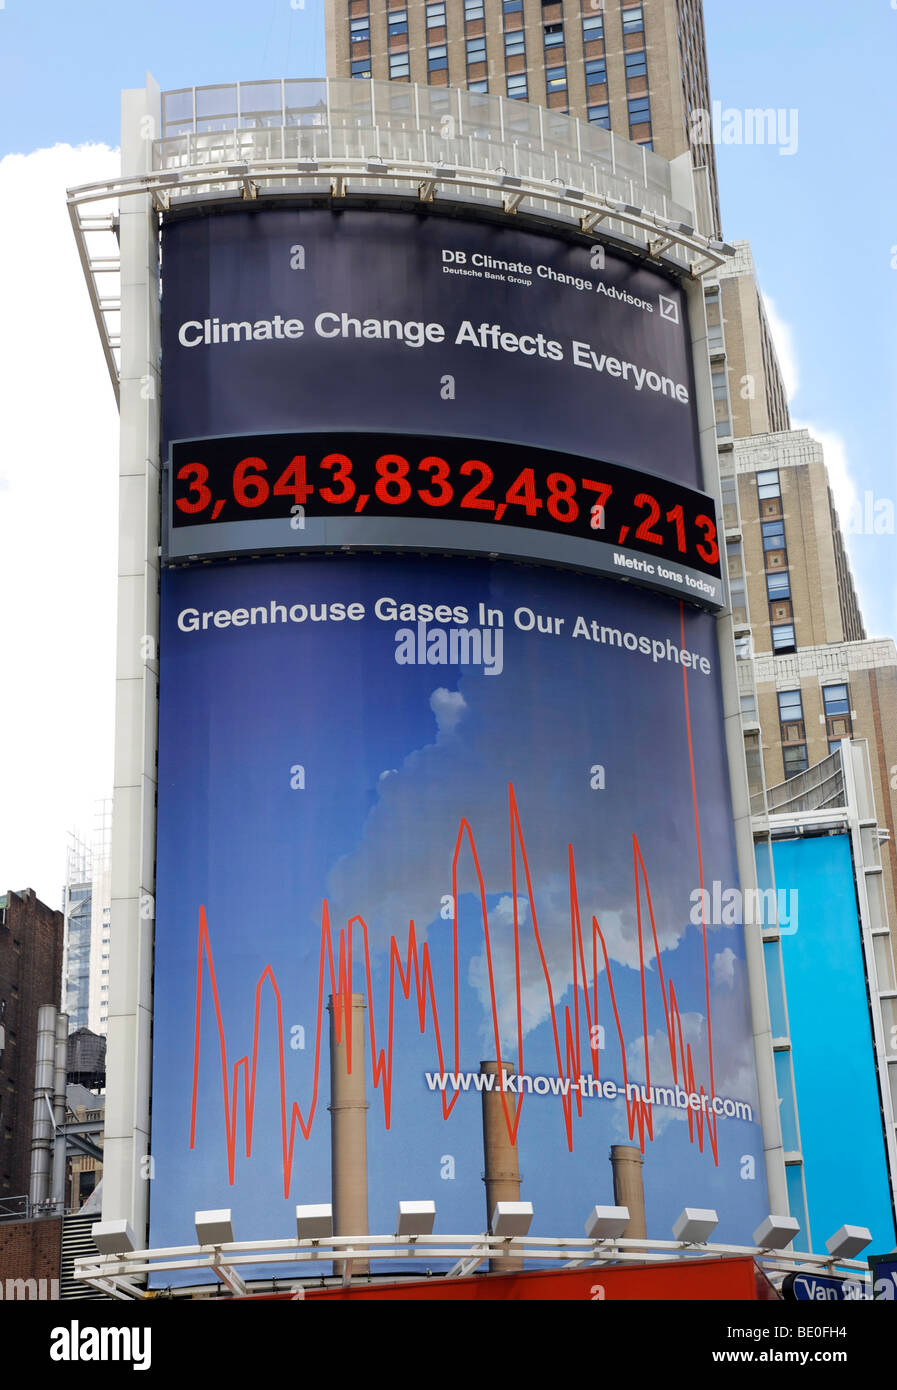 Cambio climático billboard que calcula las emisiones de gases de efecto invernadero en la atmósfera. Foto de stock